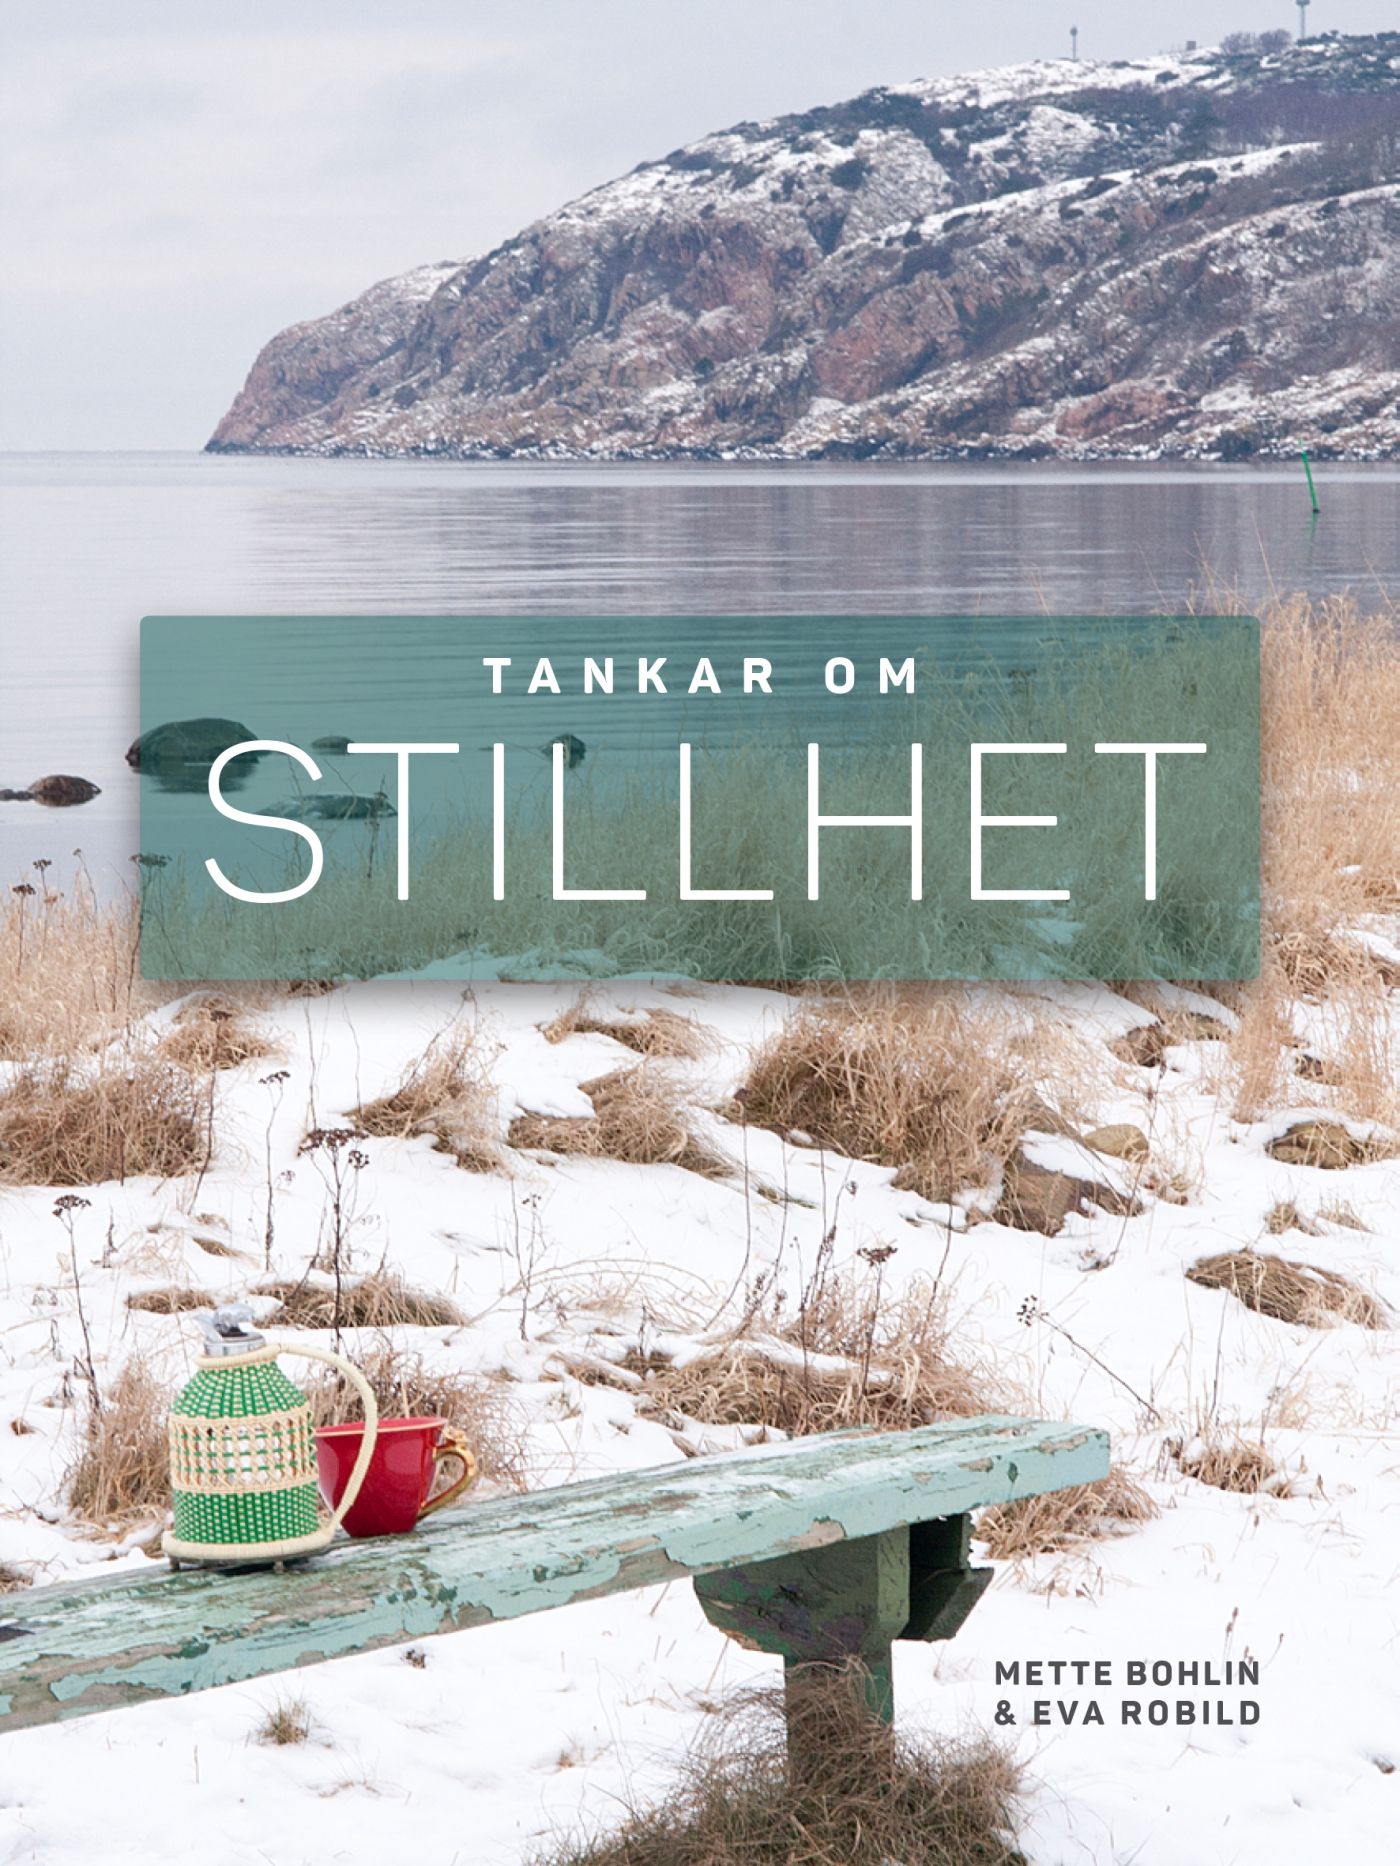 Tankar om Stillhet, e-bok av Mette Bohlin, Eva Robild